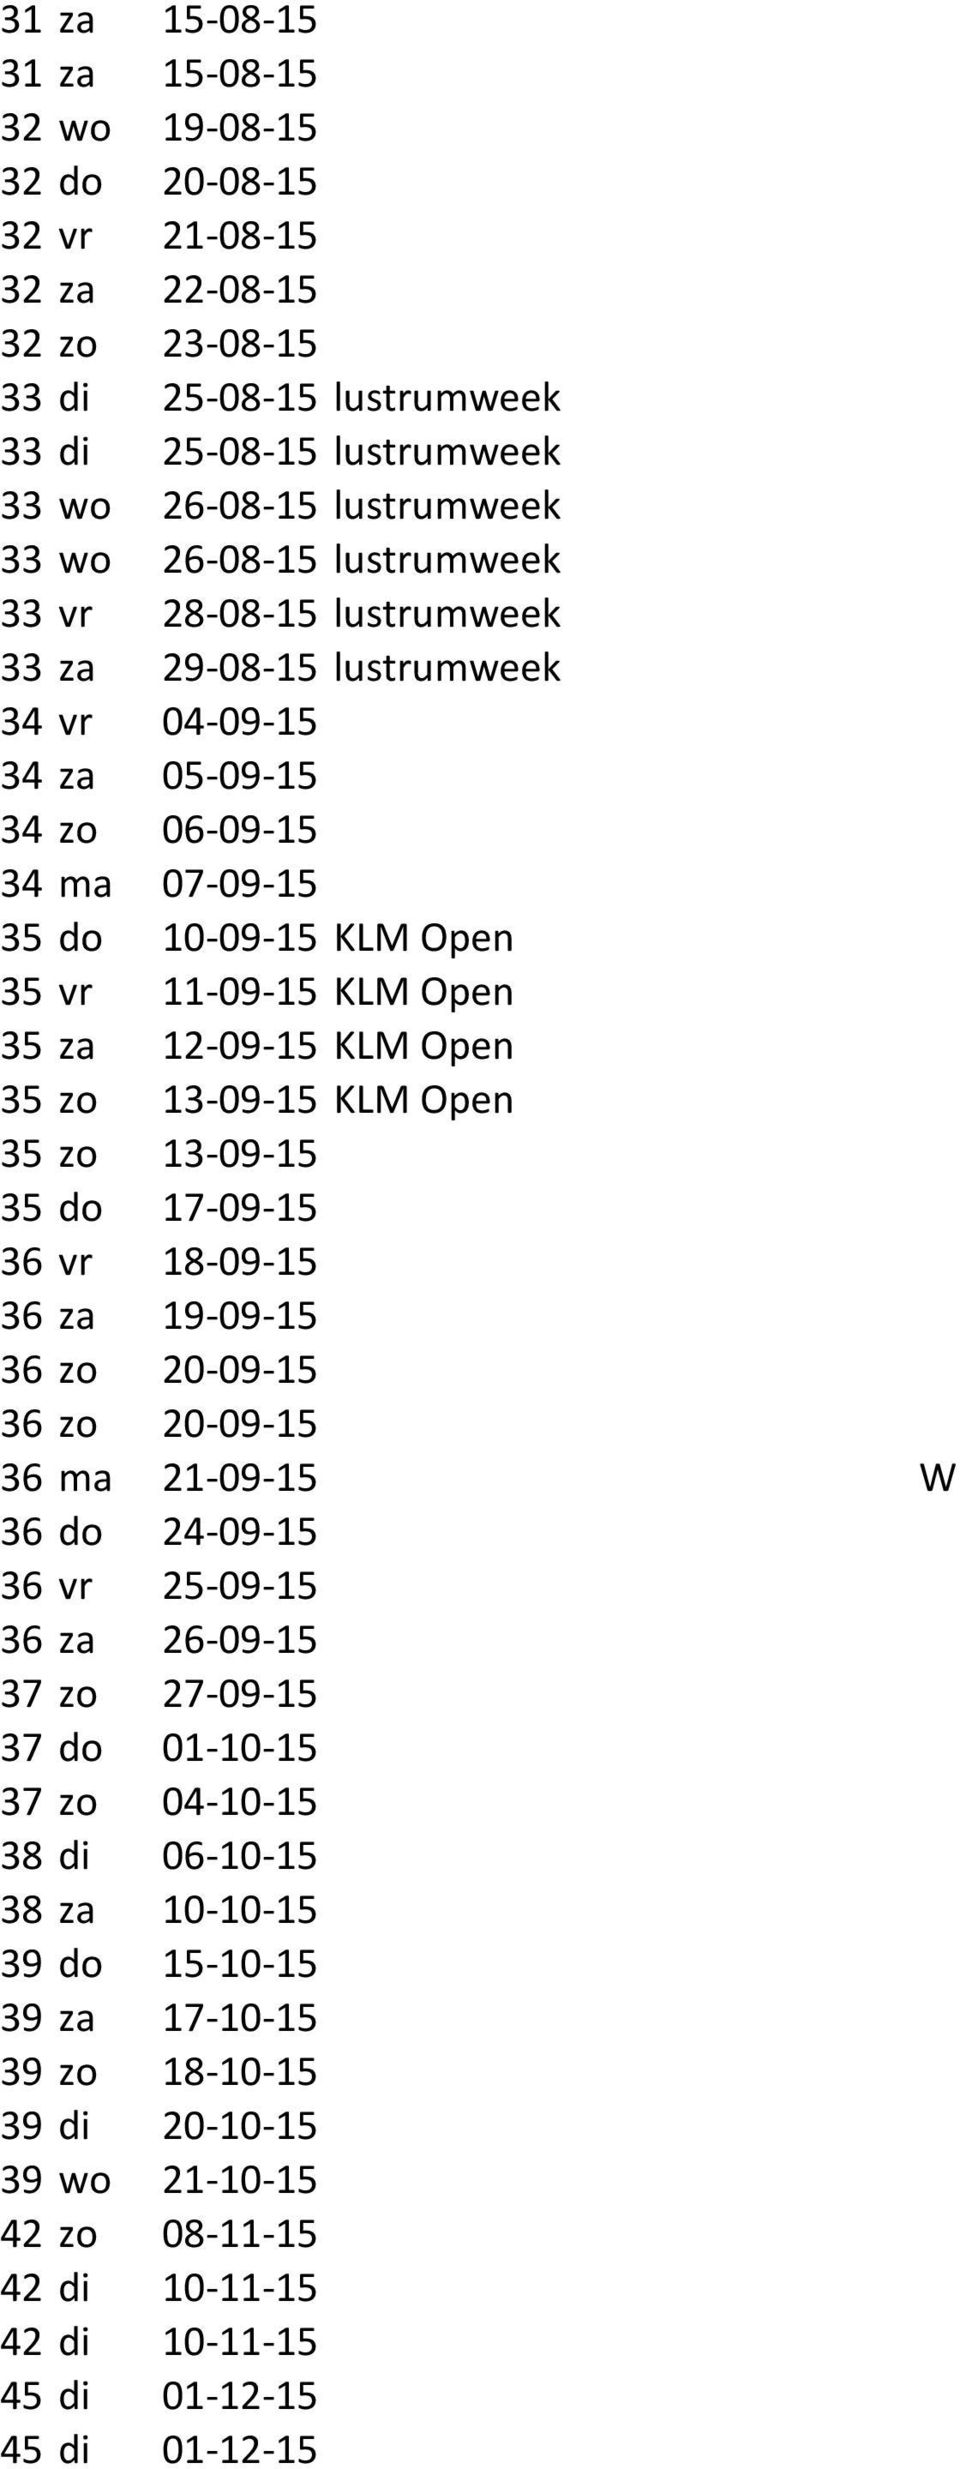 za 12-09- 15 KLM Open 35 zo 13-09- 15 KLM Open 35 zo 13-09- 15 35 do 17-09- 15 36 vr 18-09- 15 36 za 19-09- 15 36 zo 20-09- 15 36 zo 20-09- 15 36 ma 21-09- 15 W 36 do 24-09- 15 36 vr 25-09- 15 36 za